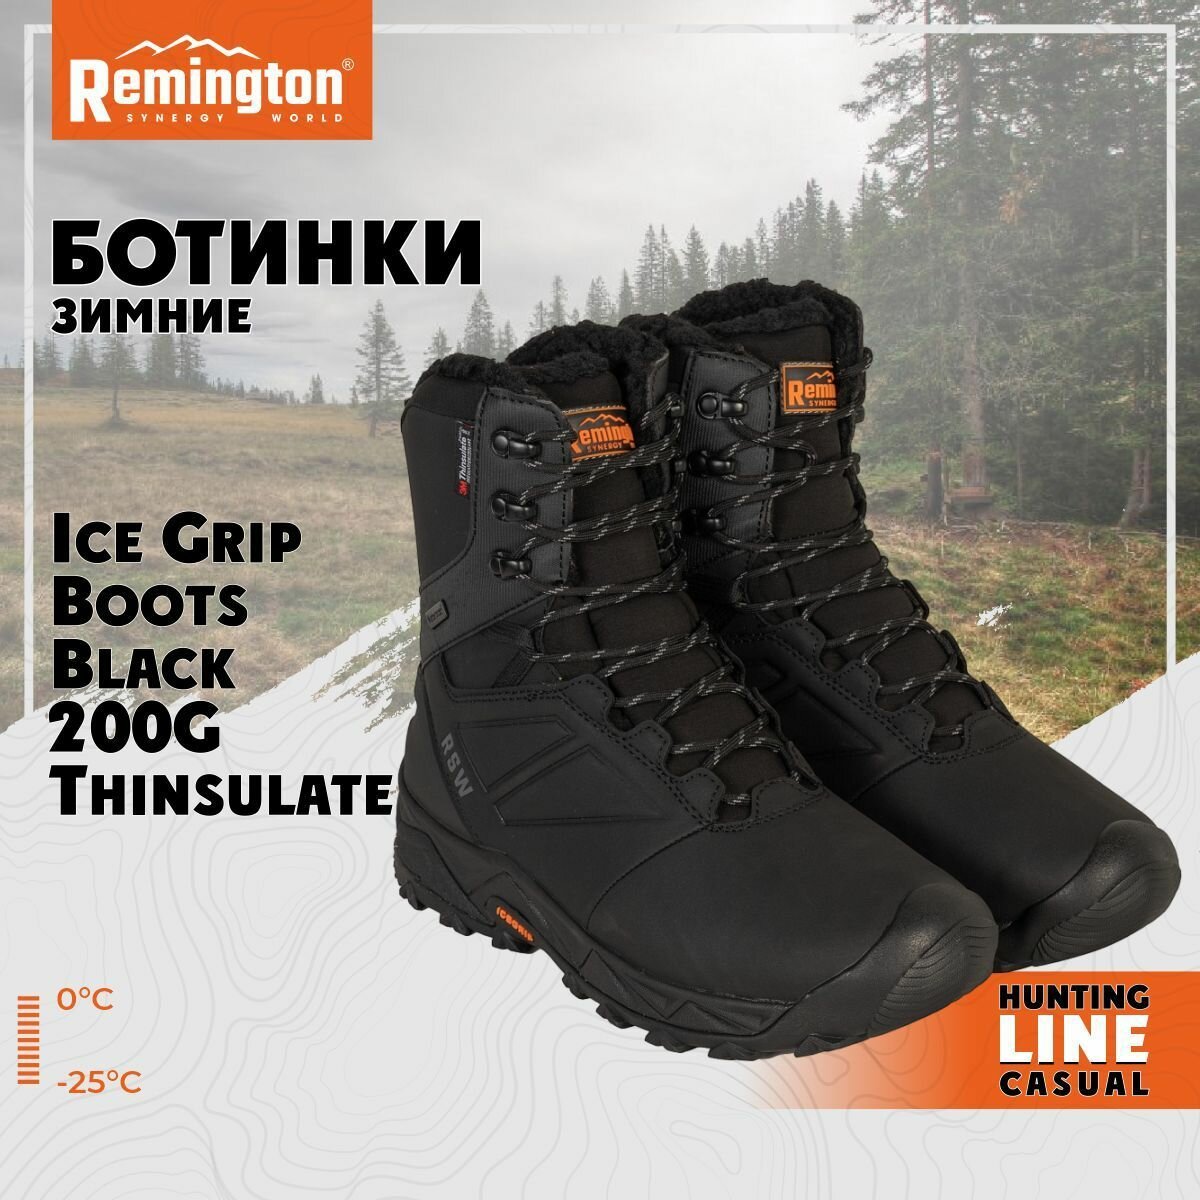 Ботинки Remington Ice Grip Boots Black 200g Thinsulate р. 44 RB2937-010